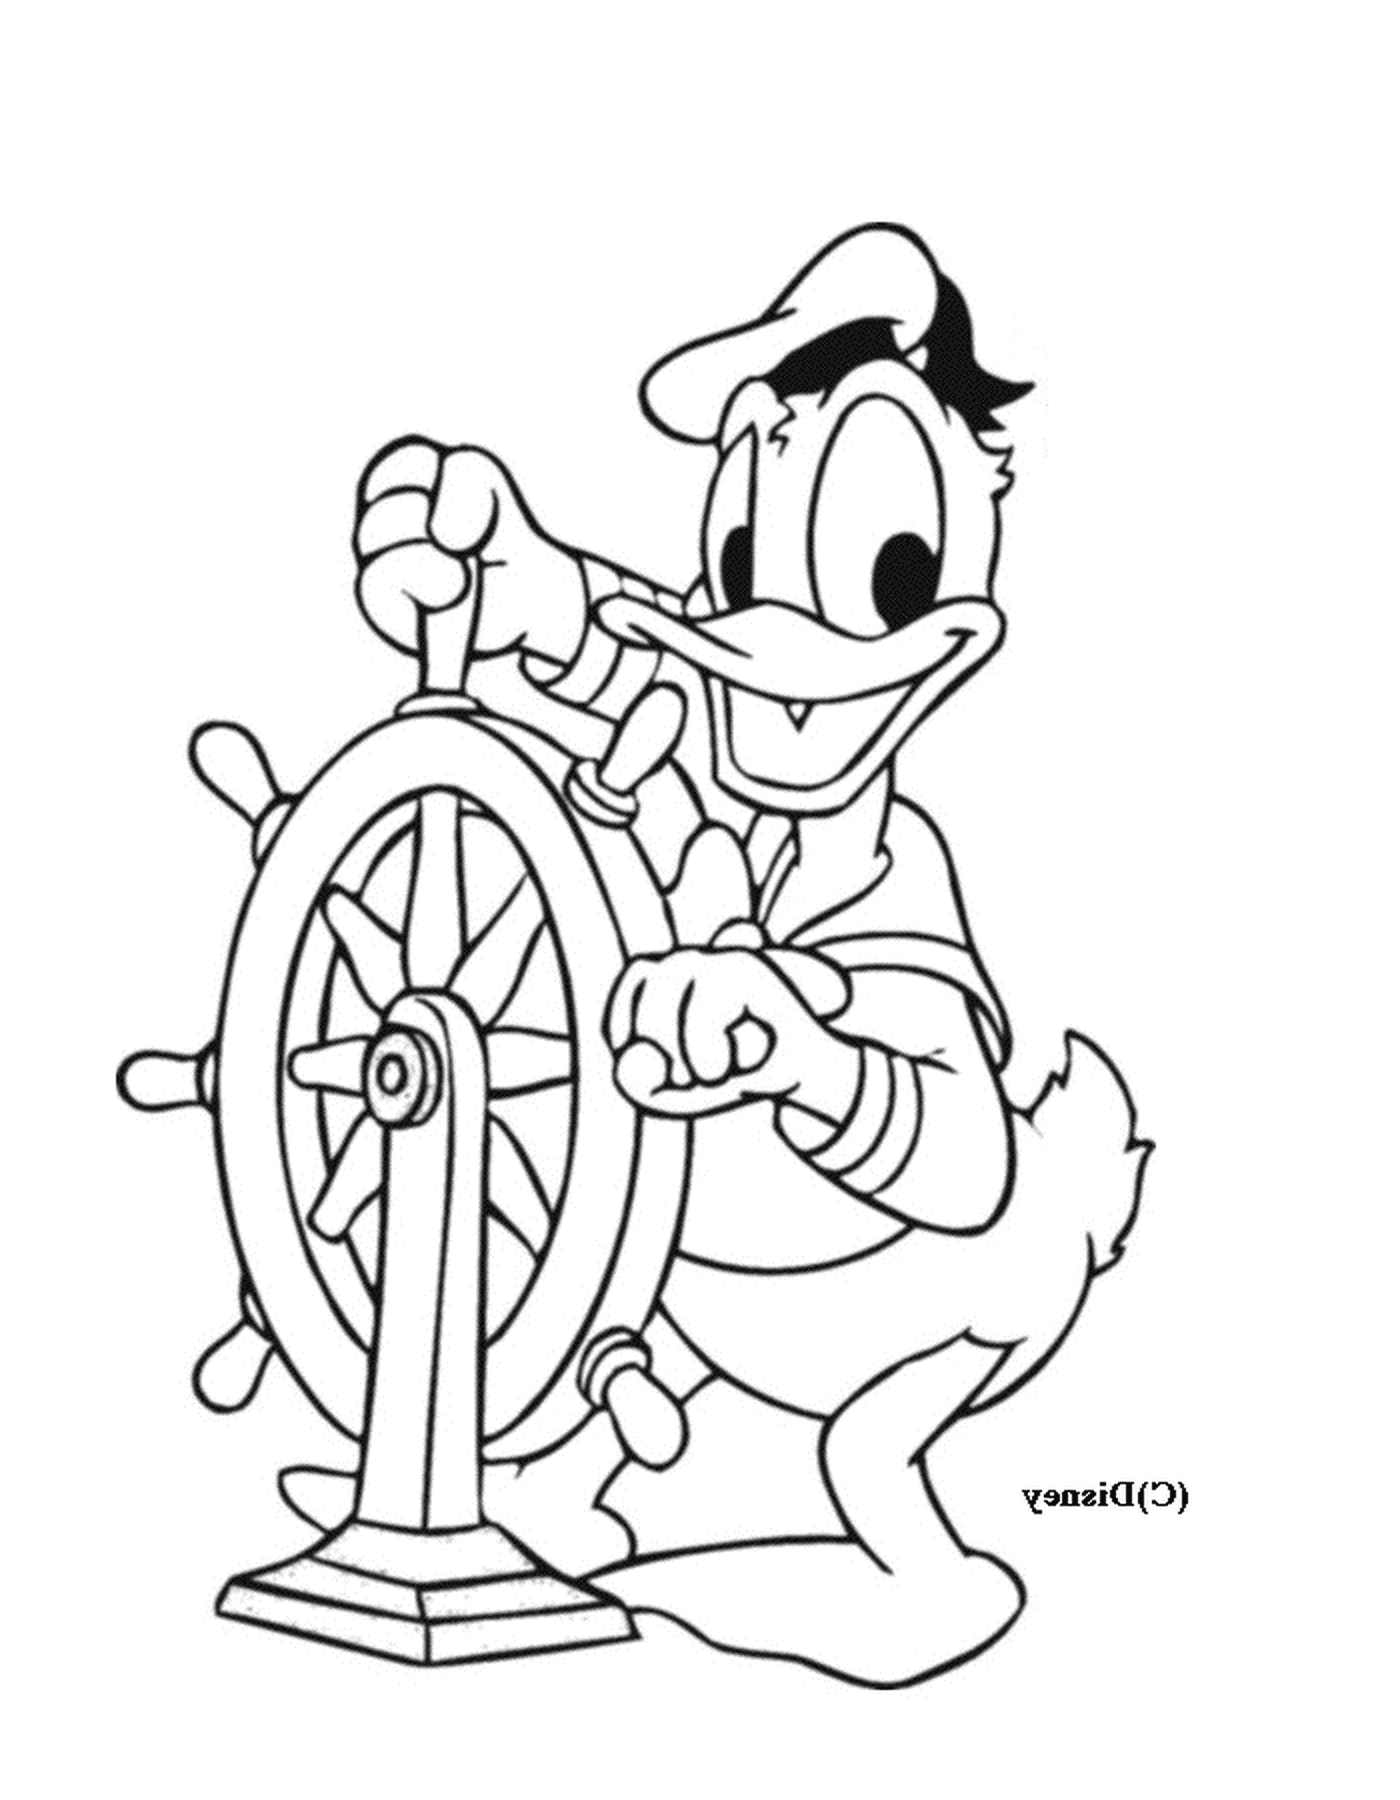  Donald segelt zuversichtlich 